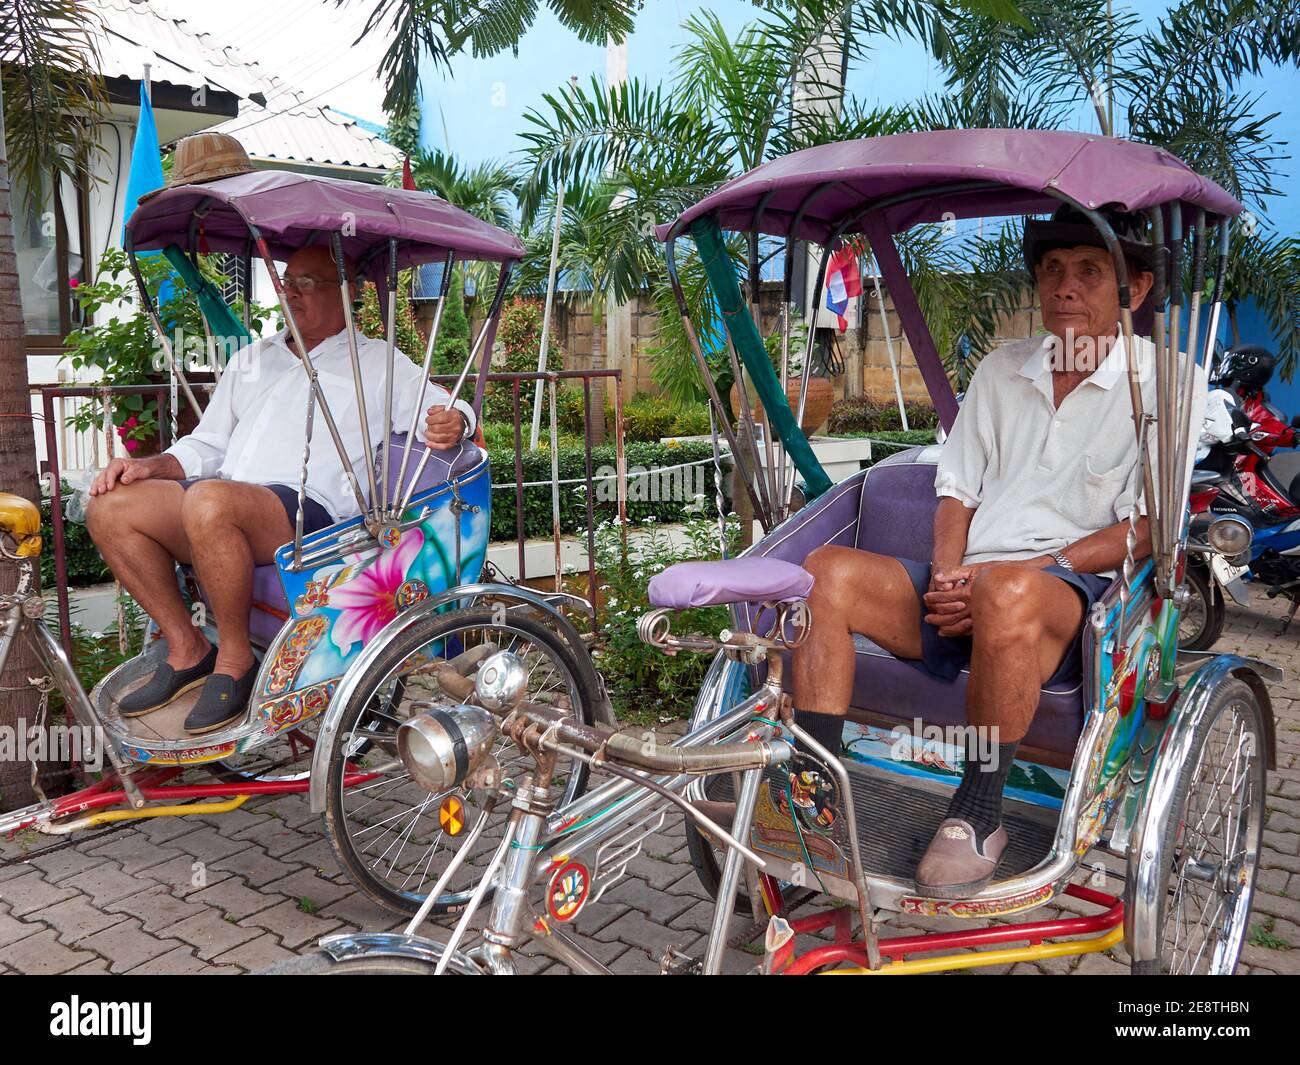 Zwei Männer mittleren Alters, die Rikschas fahren, sitzen in der Rikschas warten auf die Ankunft der Passagiere, die ihre Dienste zu nutzen Stockfoto